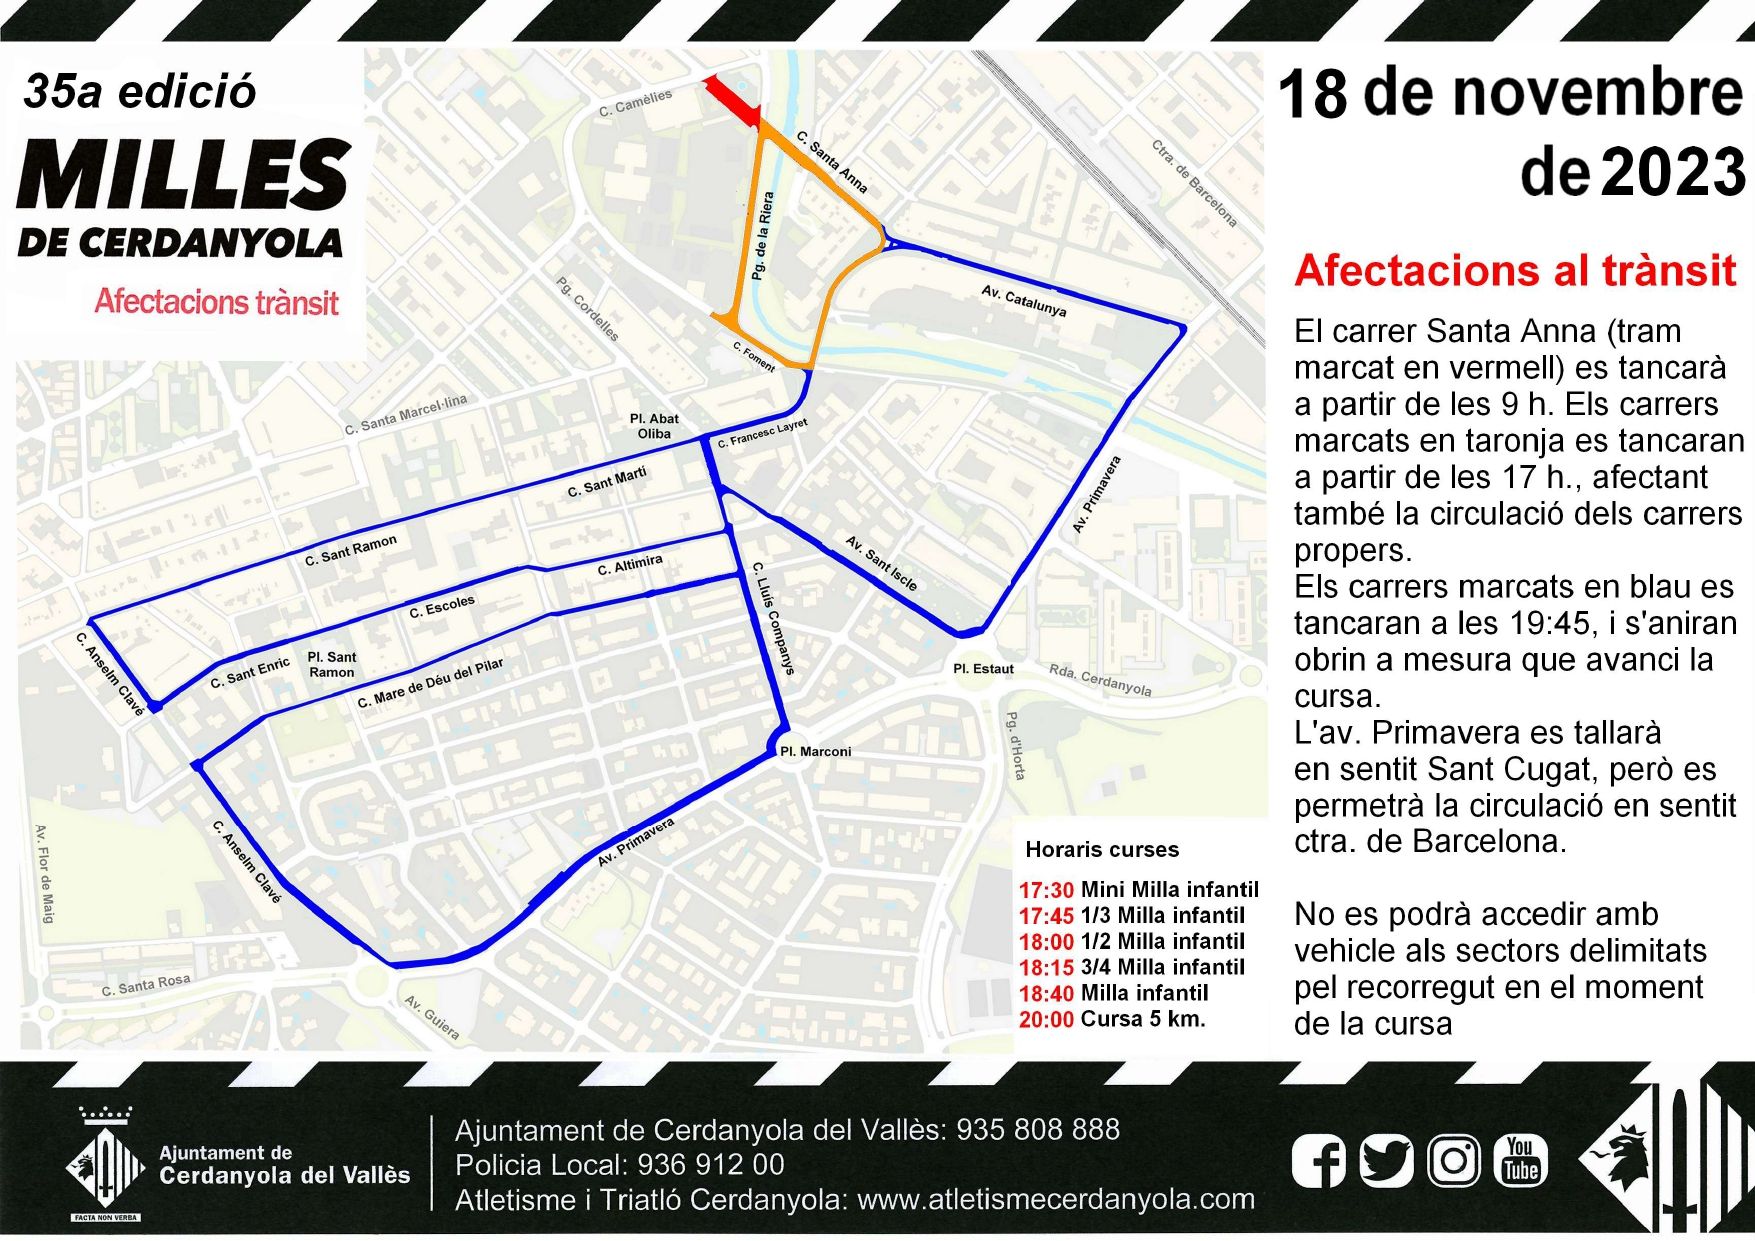 Mapa de les afectacions al trànsit per la cursa Milles de Cerdanyola, FOTO: Atletisme i Triatló Cerdanyola